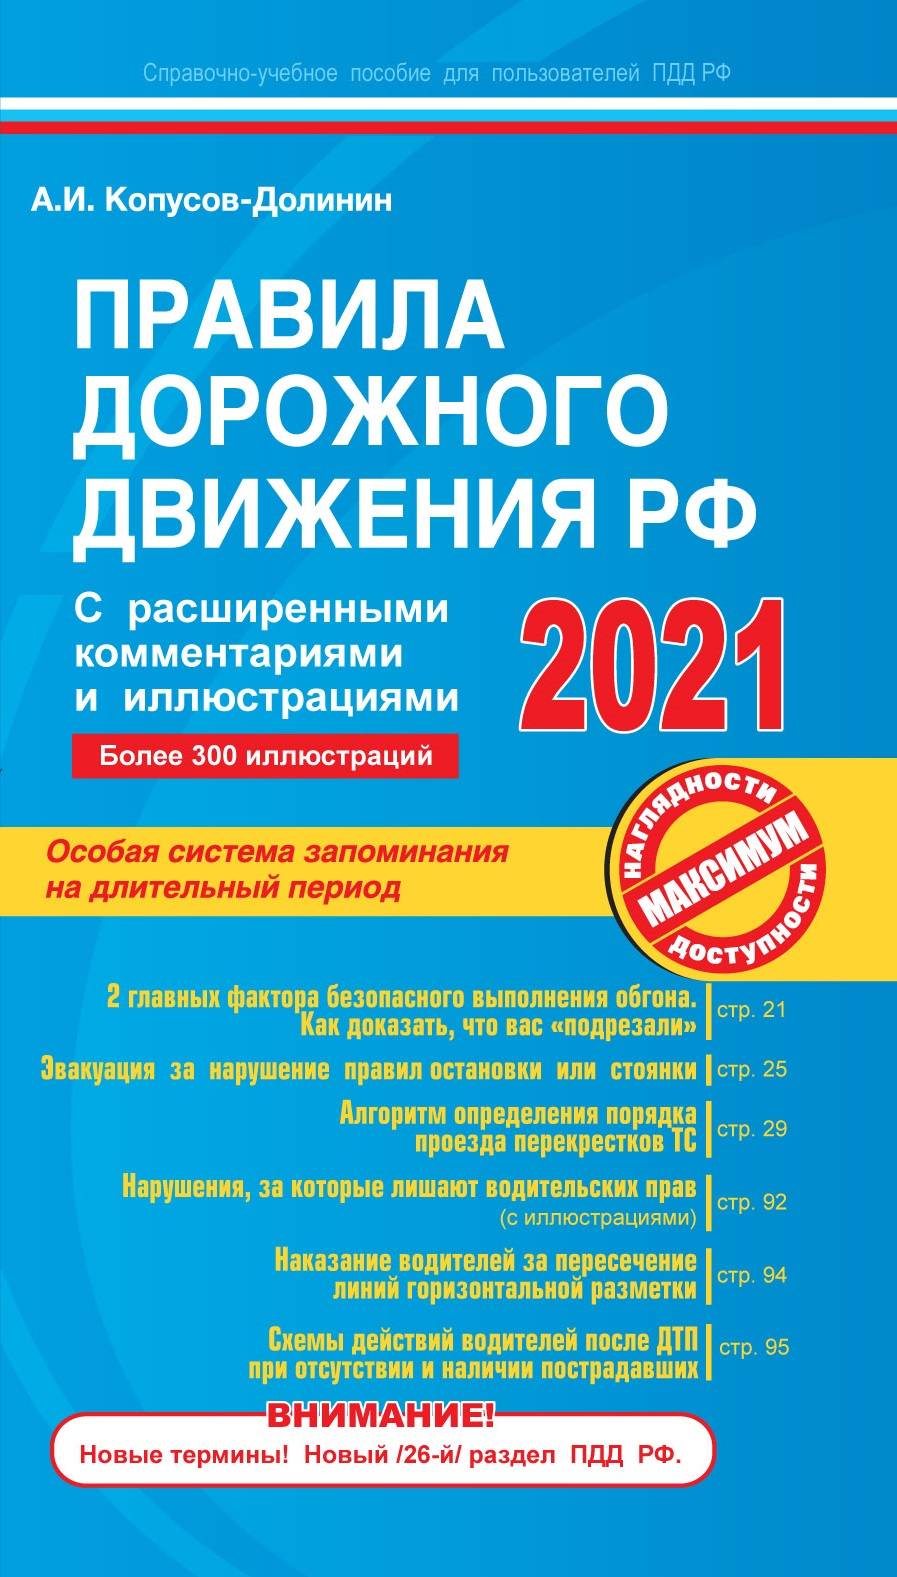 Копусов-Долинин А.И. Правила дорожного движения РФ с расширенными комментариями и иллюстрациями с изм. и доп. на 2021 г. 